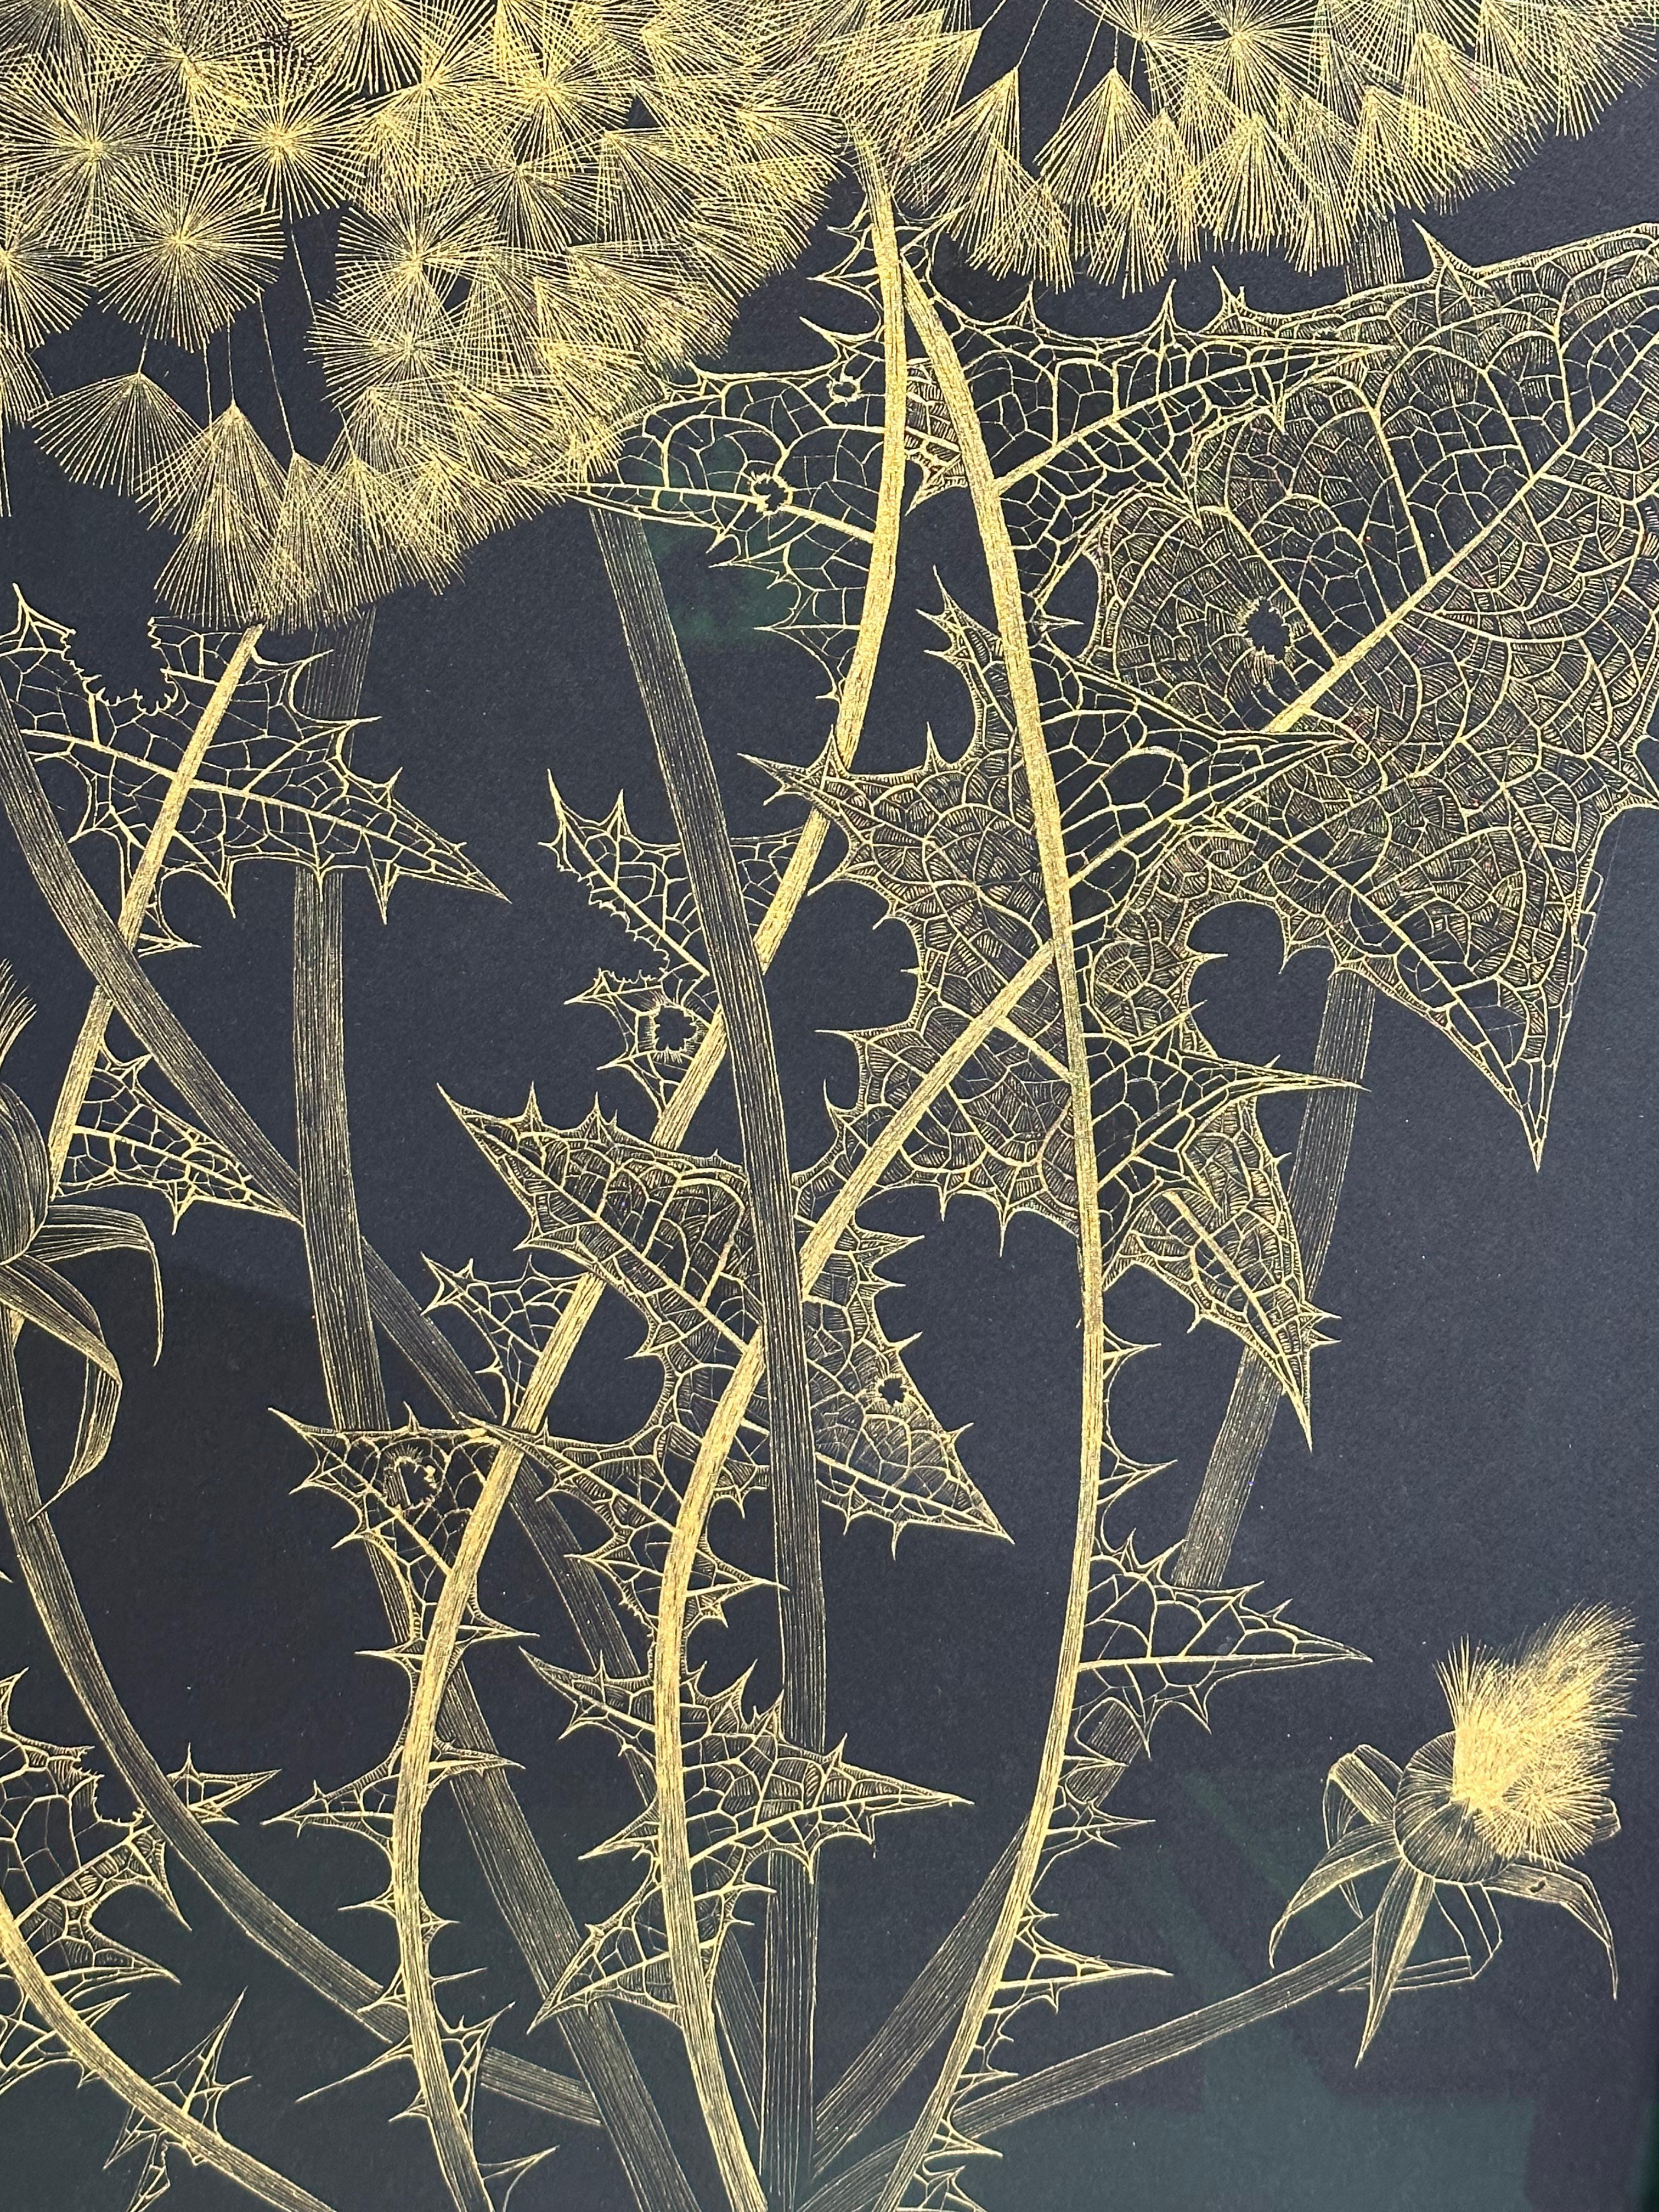 Große Löwenzahn Sechs, Botanische Malerei Schwarz, Gold Blumen, Blätter, Stem 5